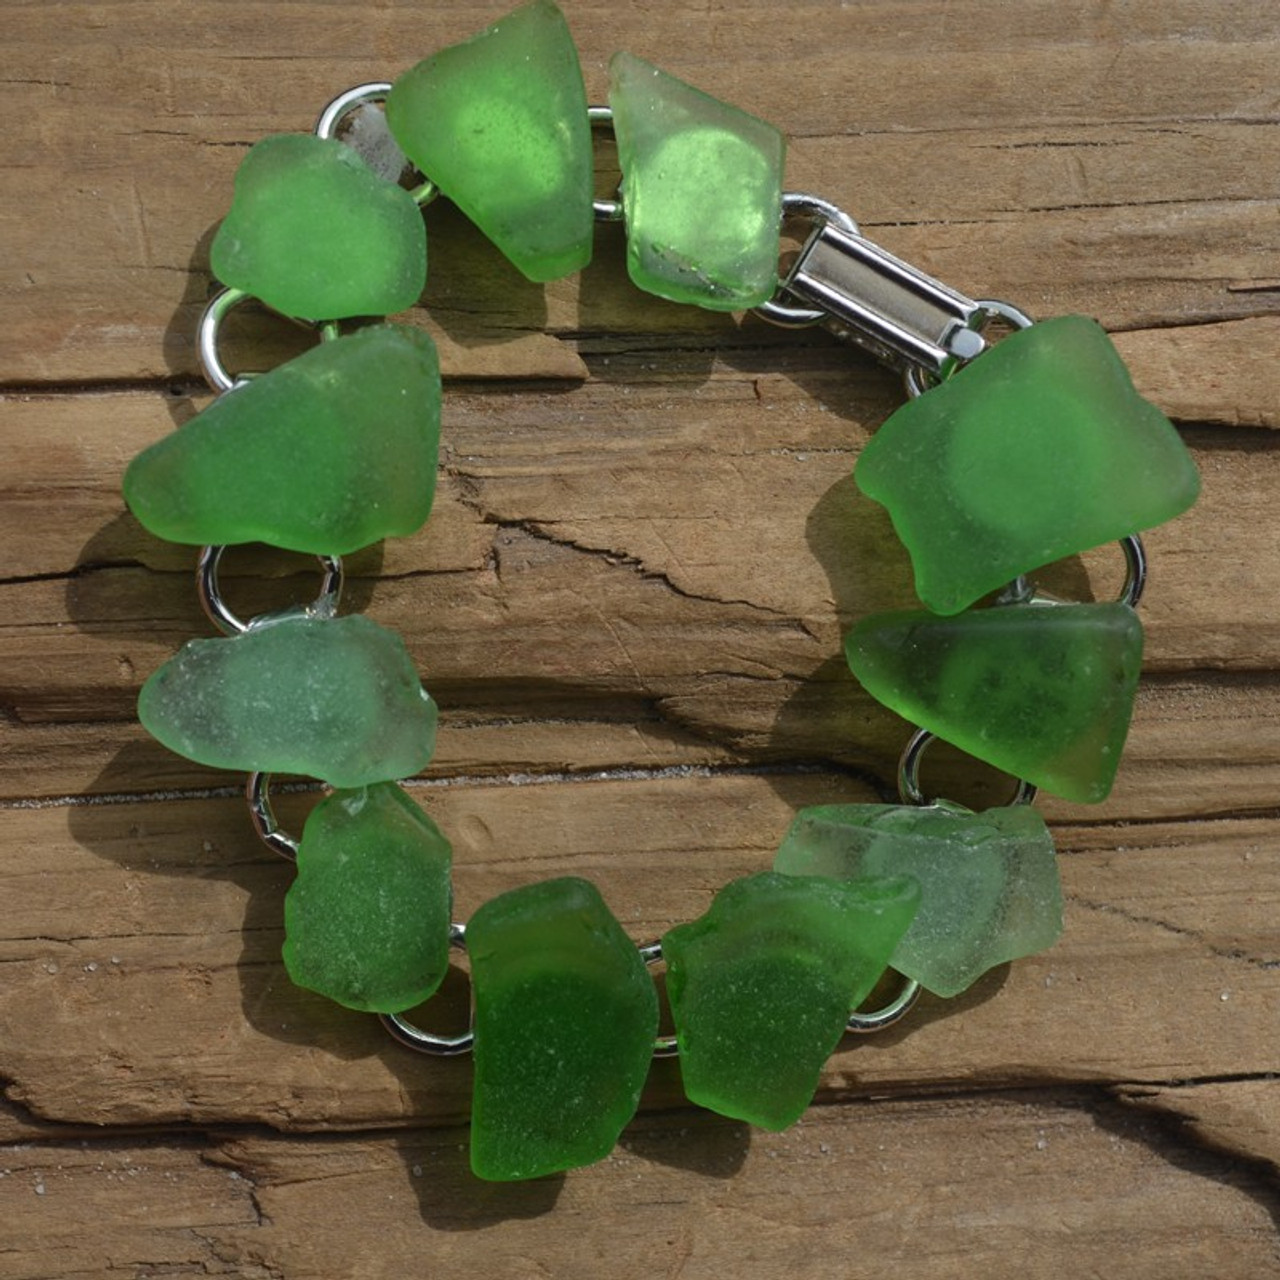 Green Sea Glass Bracelet